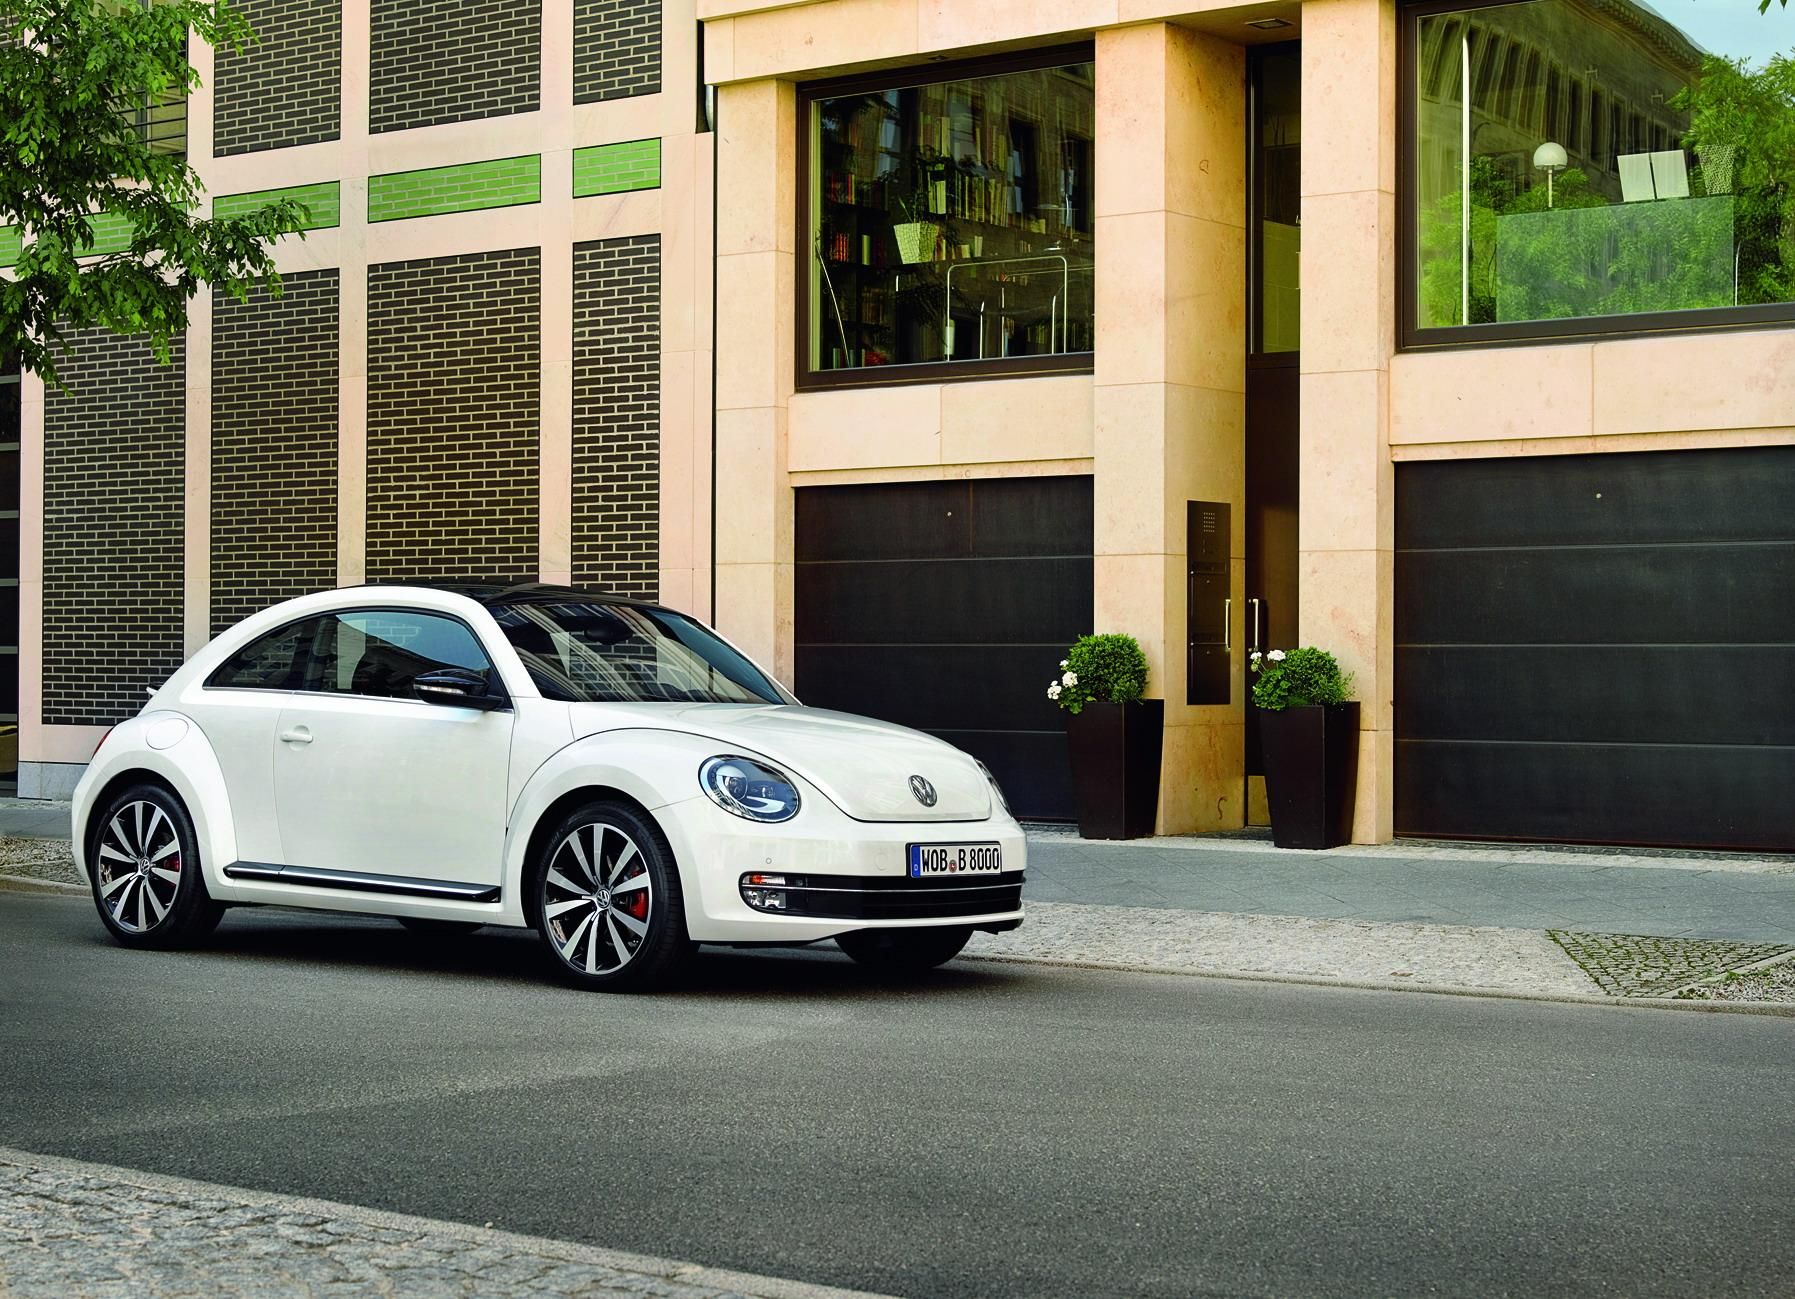 2012 - 2013 Volkswagen Beetle